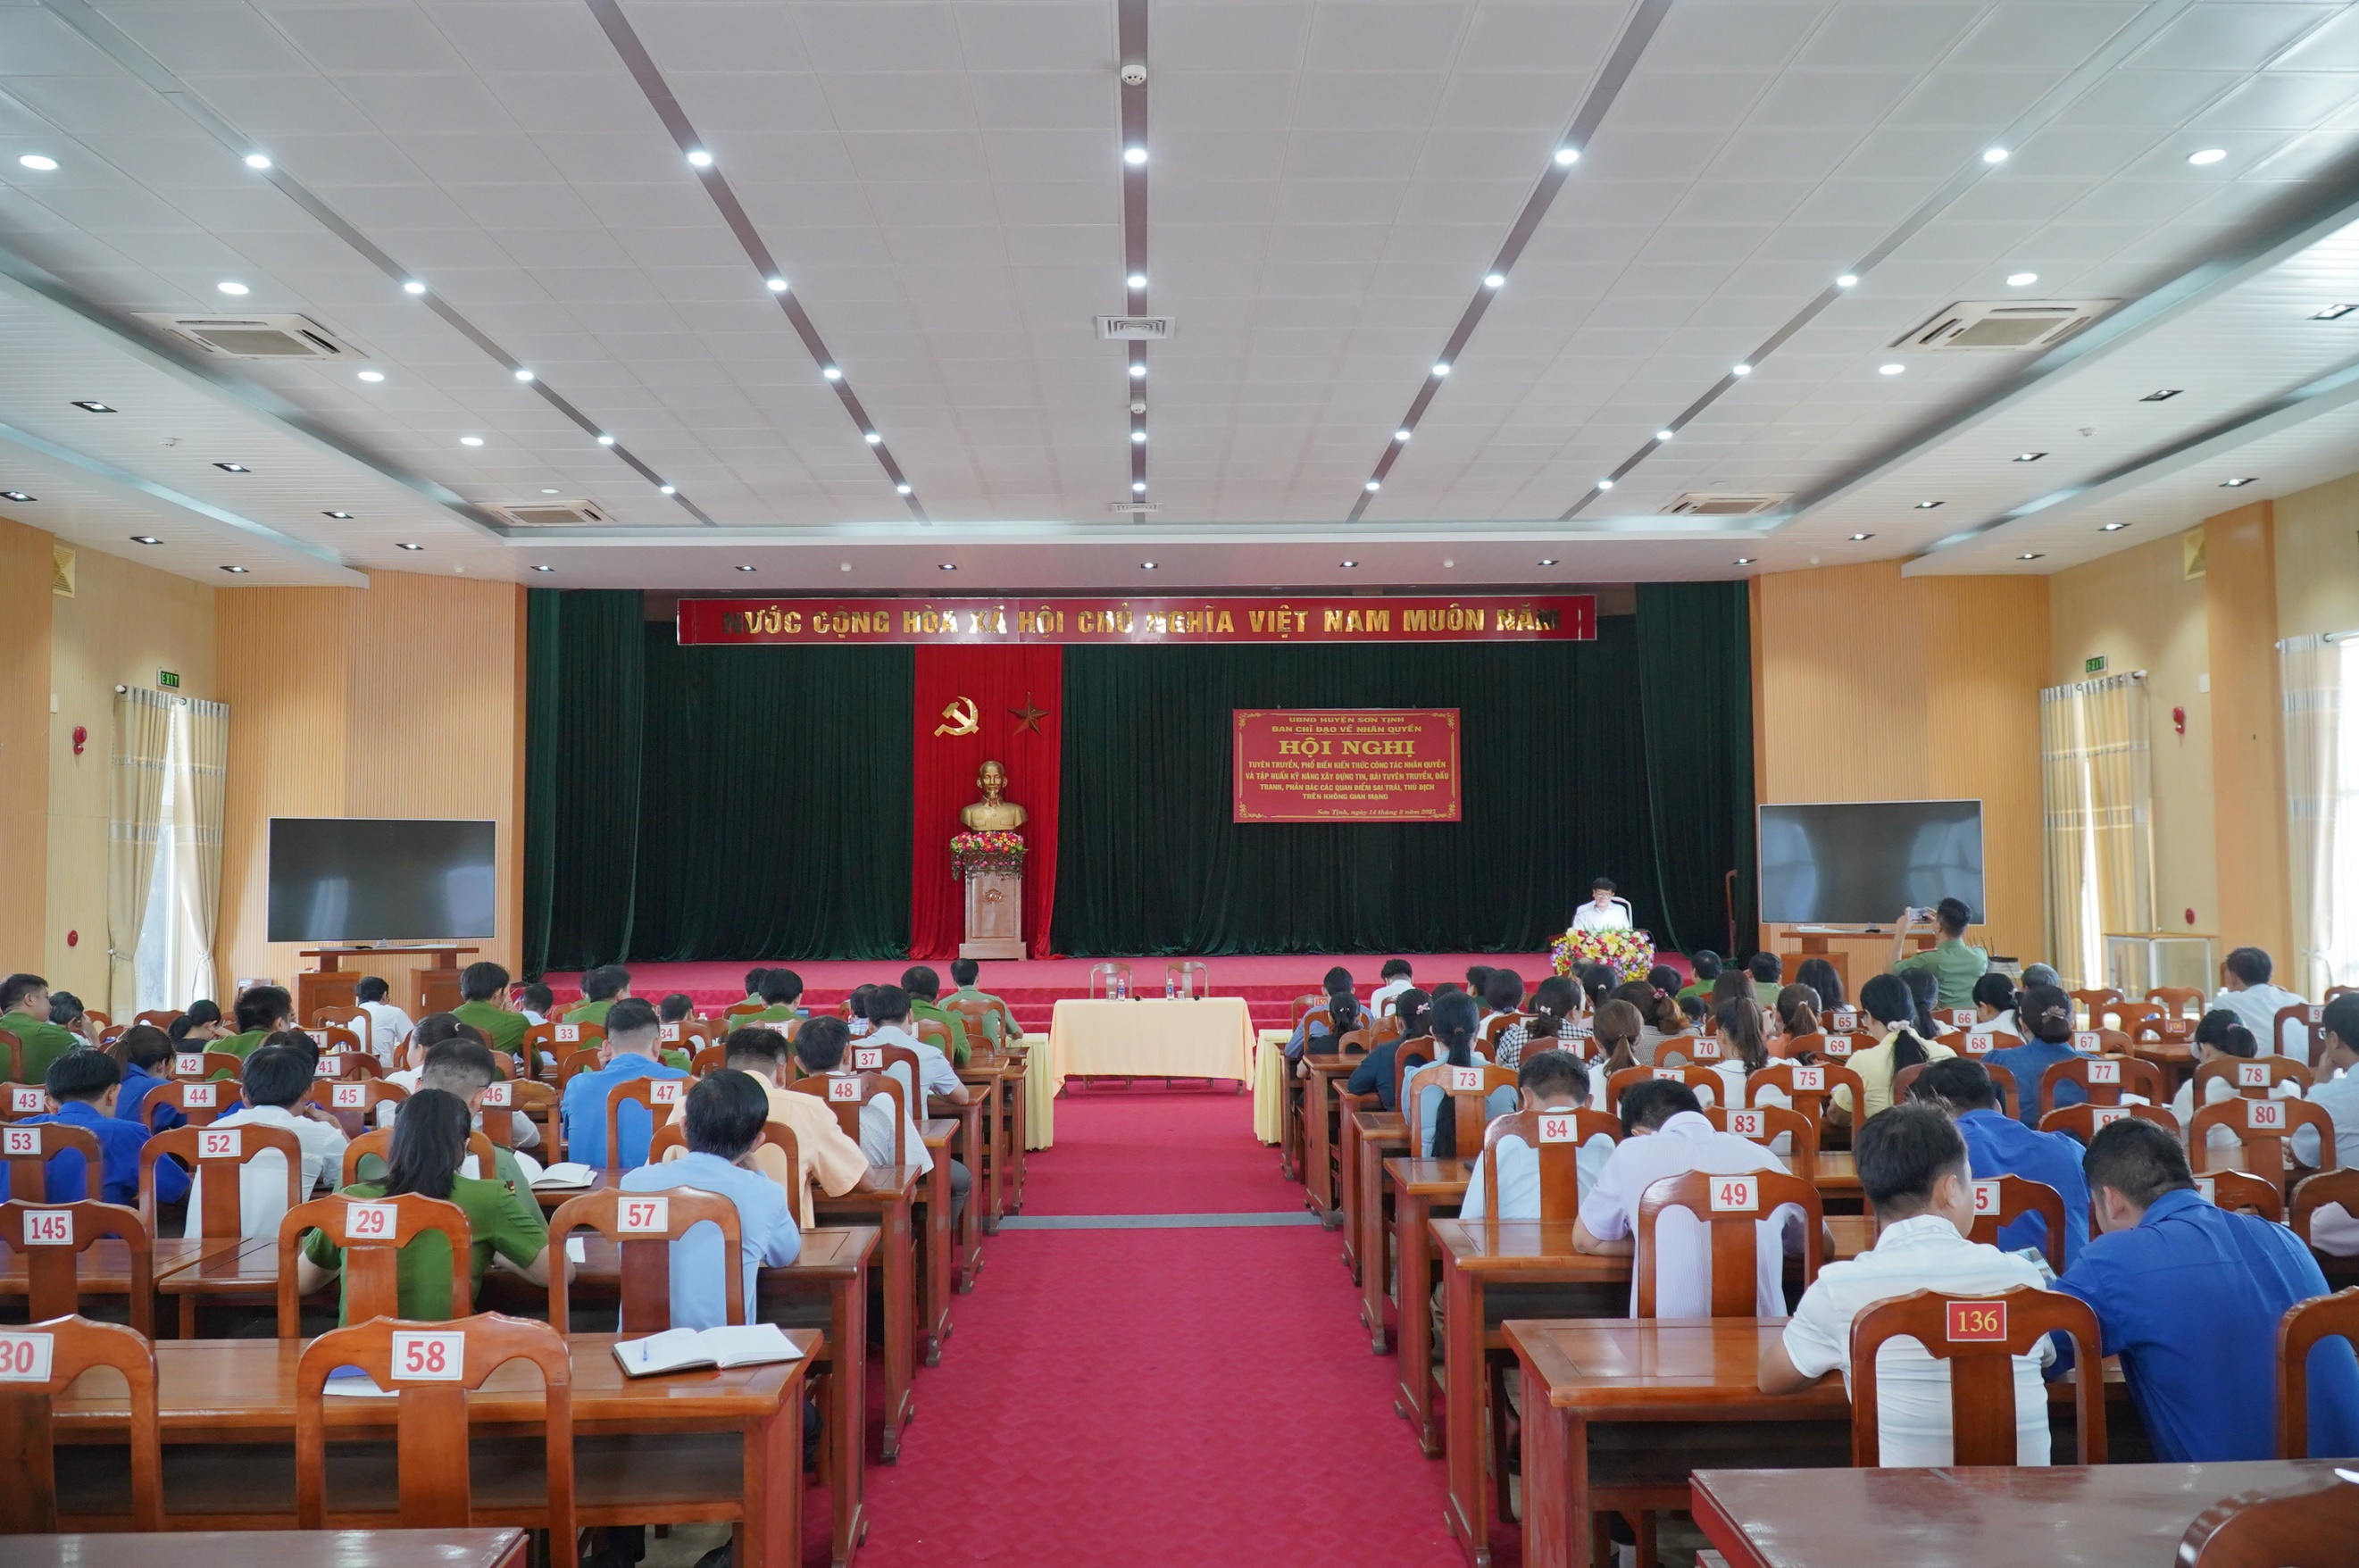 Sơn Tịnh: Bồi dưỡng chính trị hè cho đội ngũ cán bộ quản lý, giáo viên các trường học